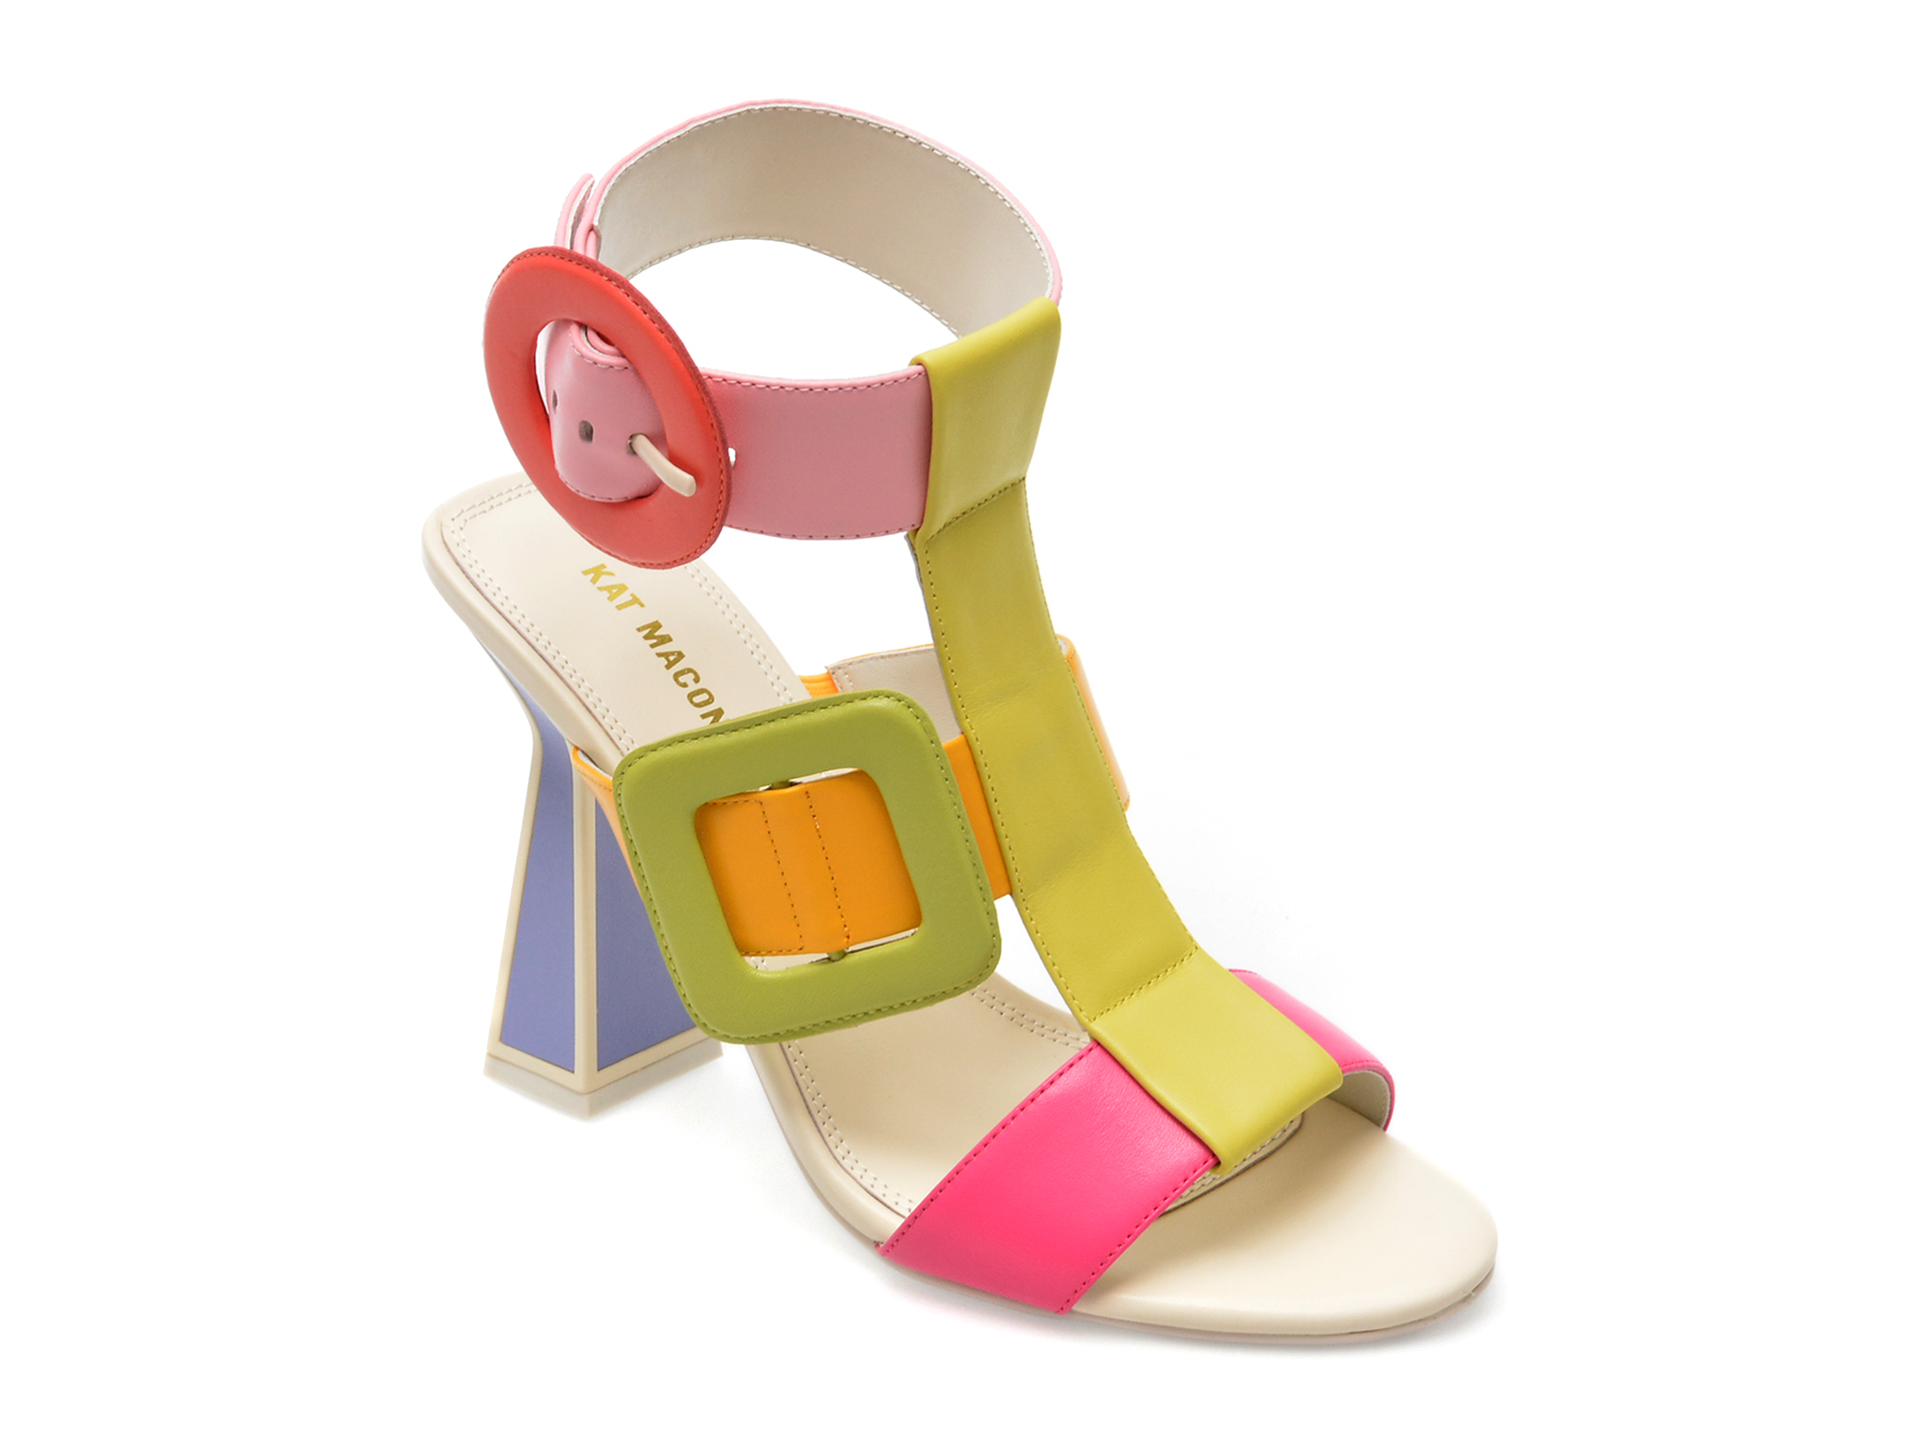 Sandale KAT MACONIE FOR EPICA multicolor, DELIZ, din piele naturala /femei/sandale